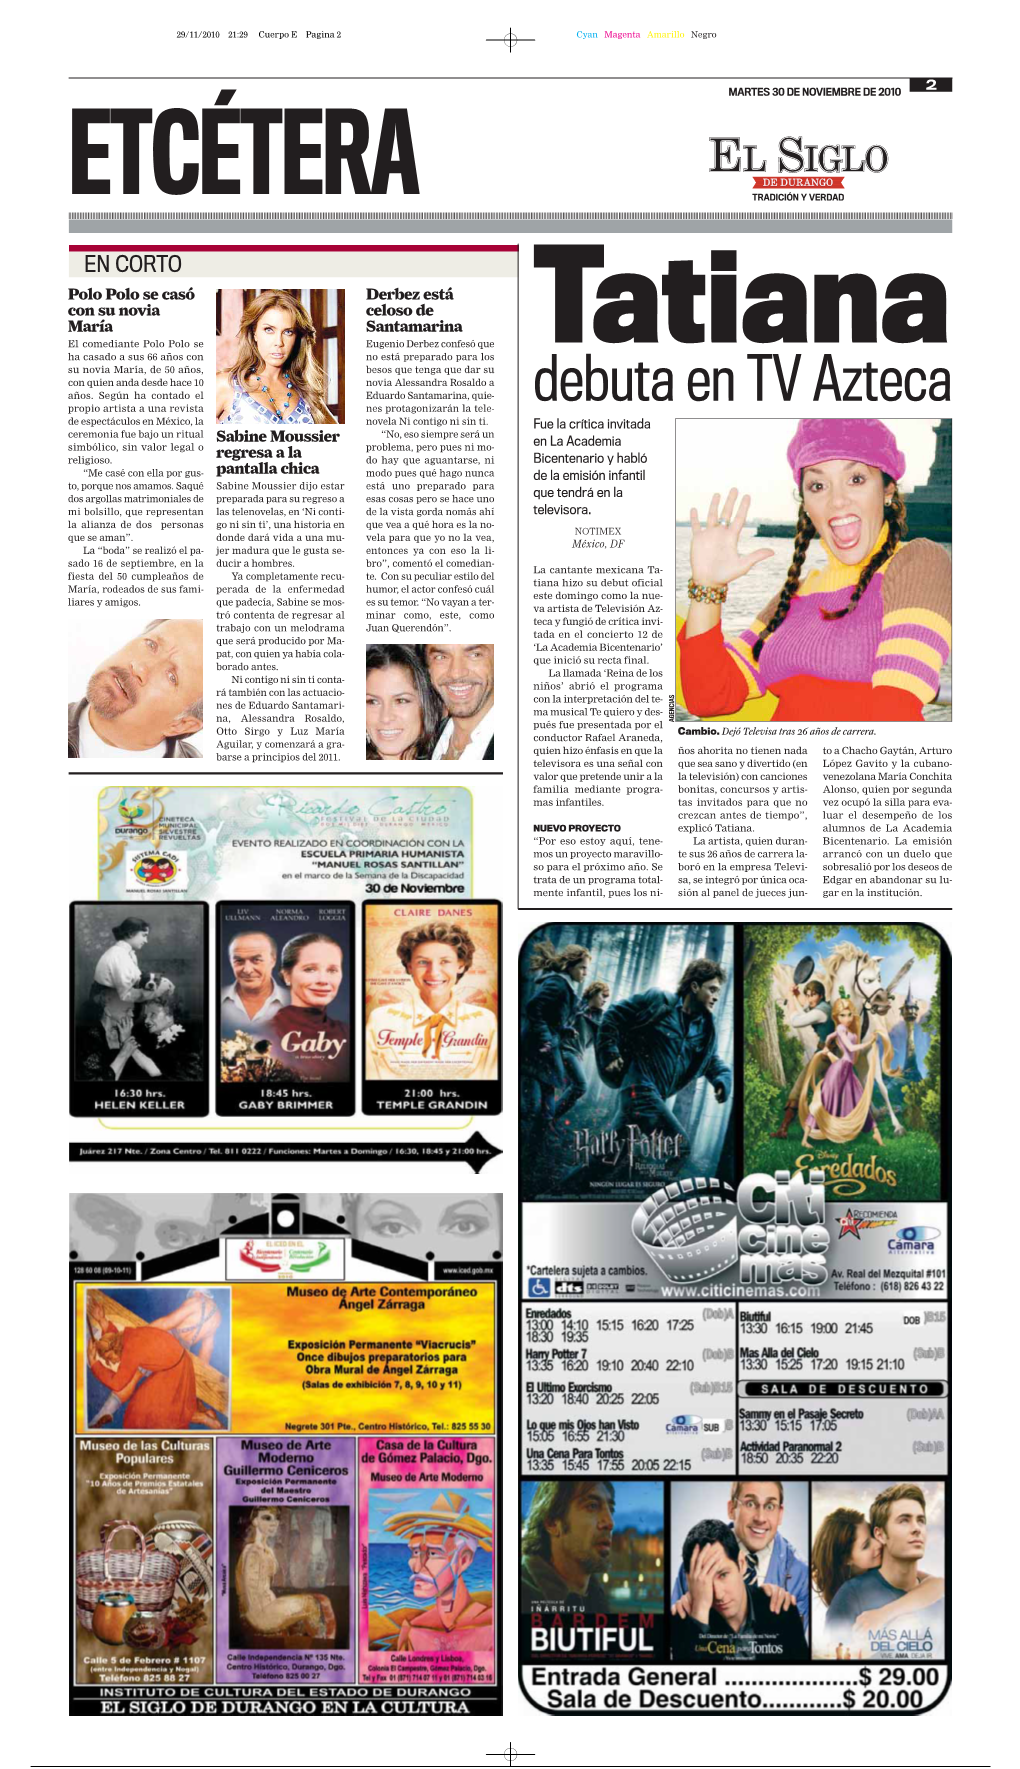 Debuta En TV Azteca Propio Artista a Una Revista Nes Protagonizarán La Tele- De Espectáculos En México, La Novela Ni Contigo Ni Sin Ti